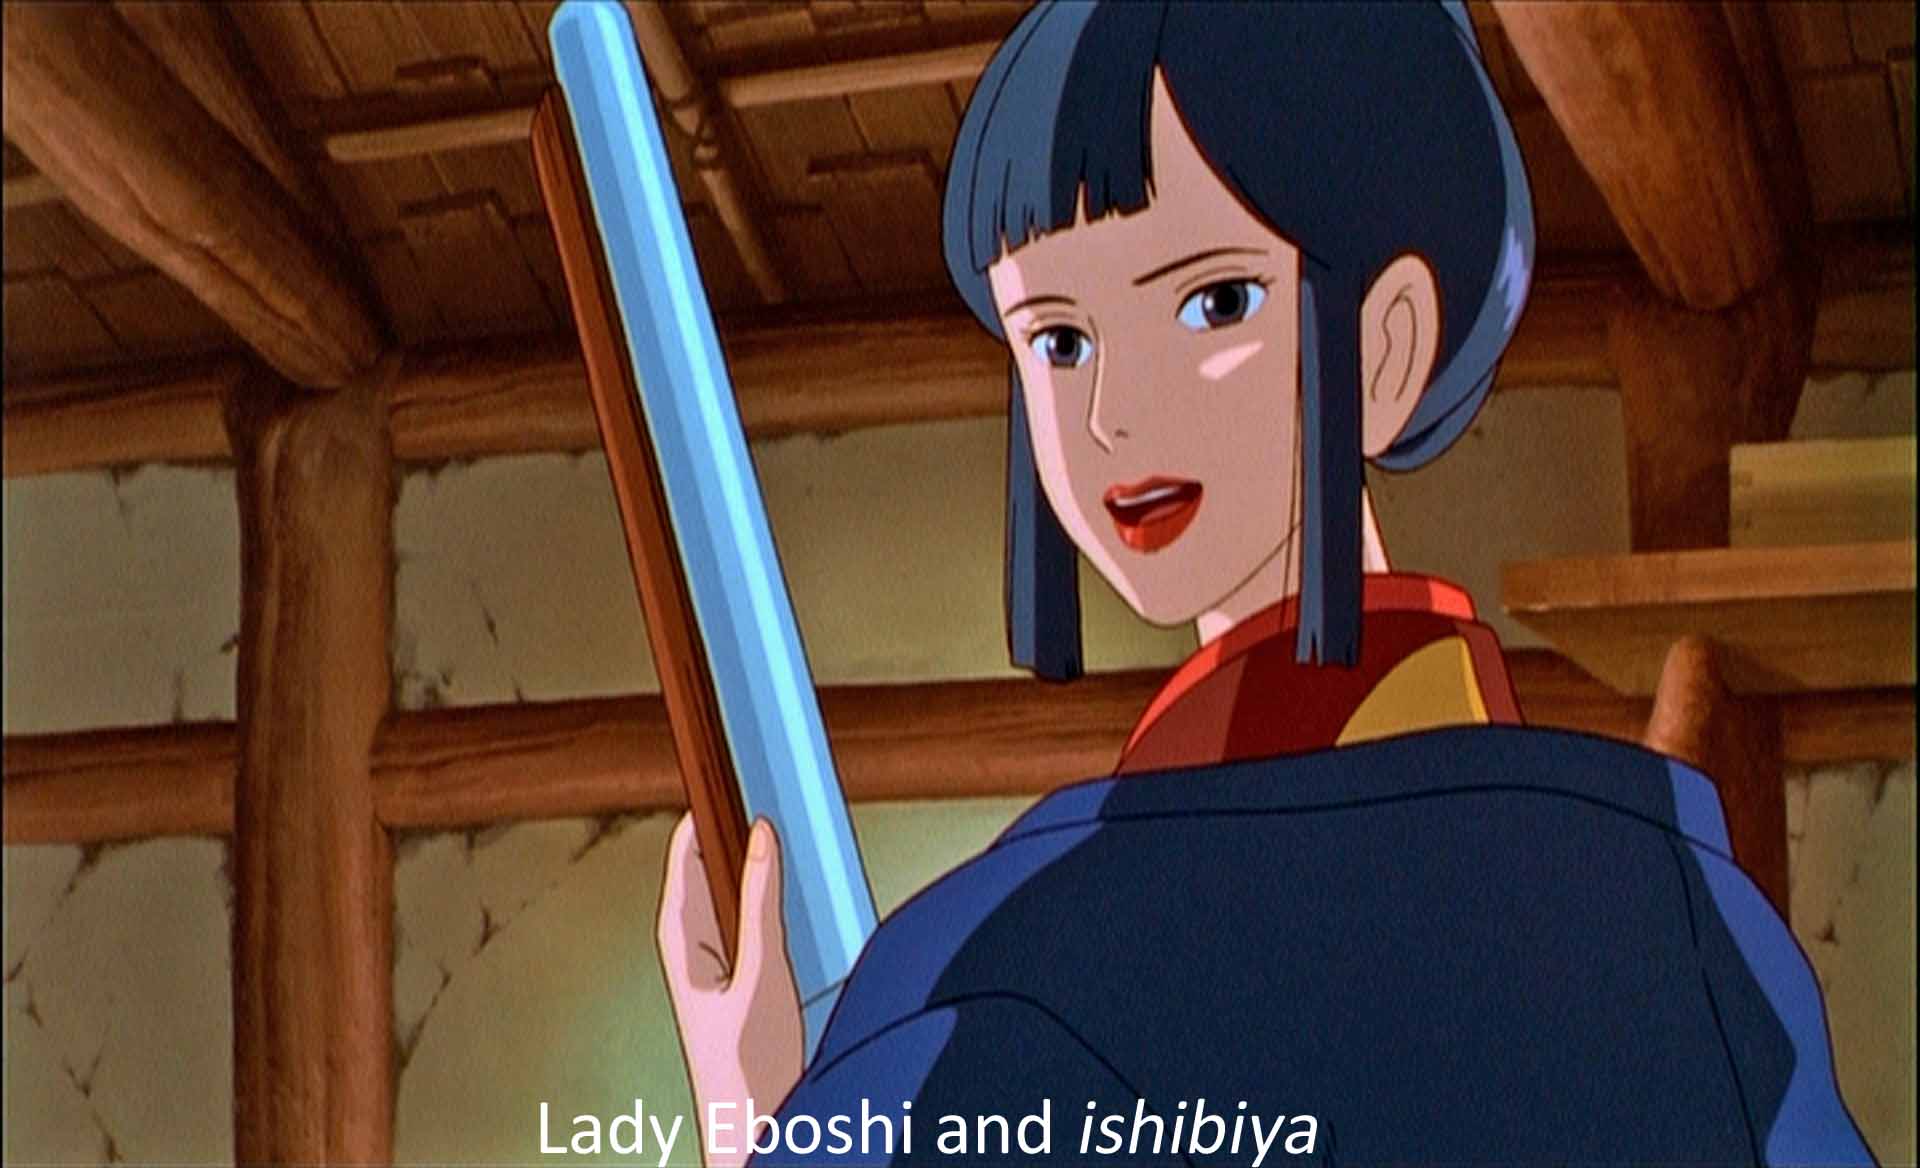 Lady Eboshi and ibishiya